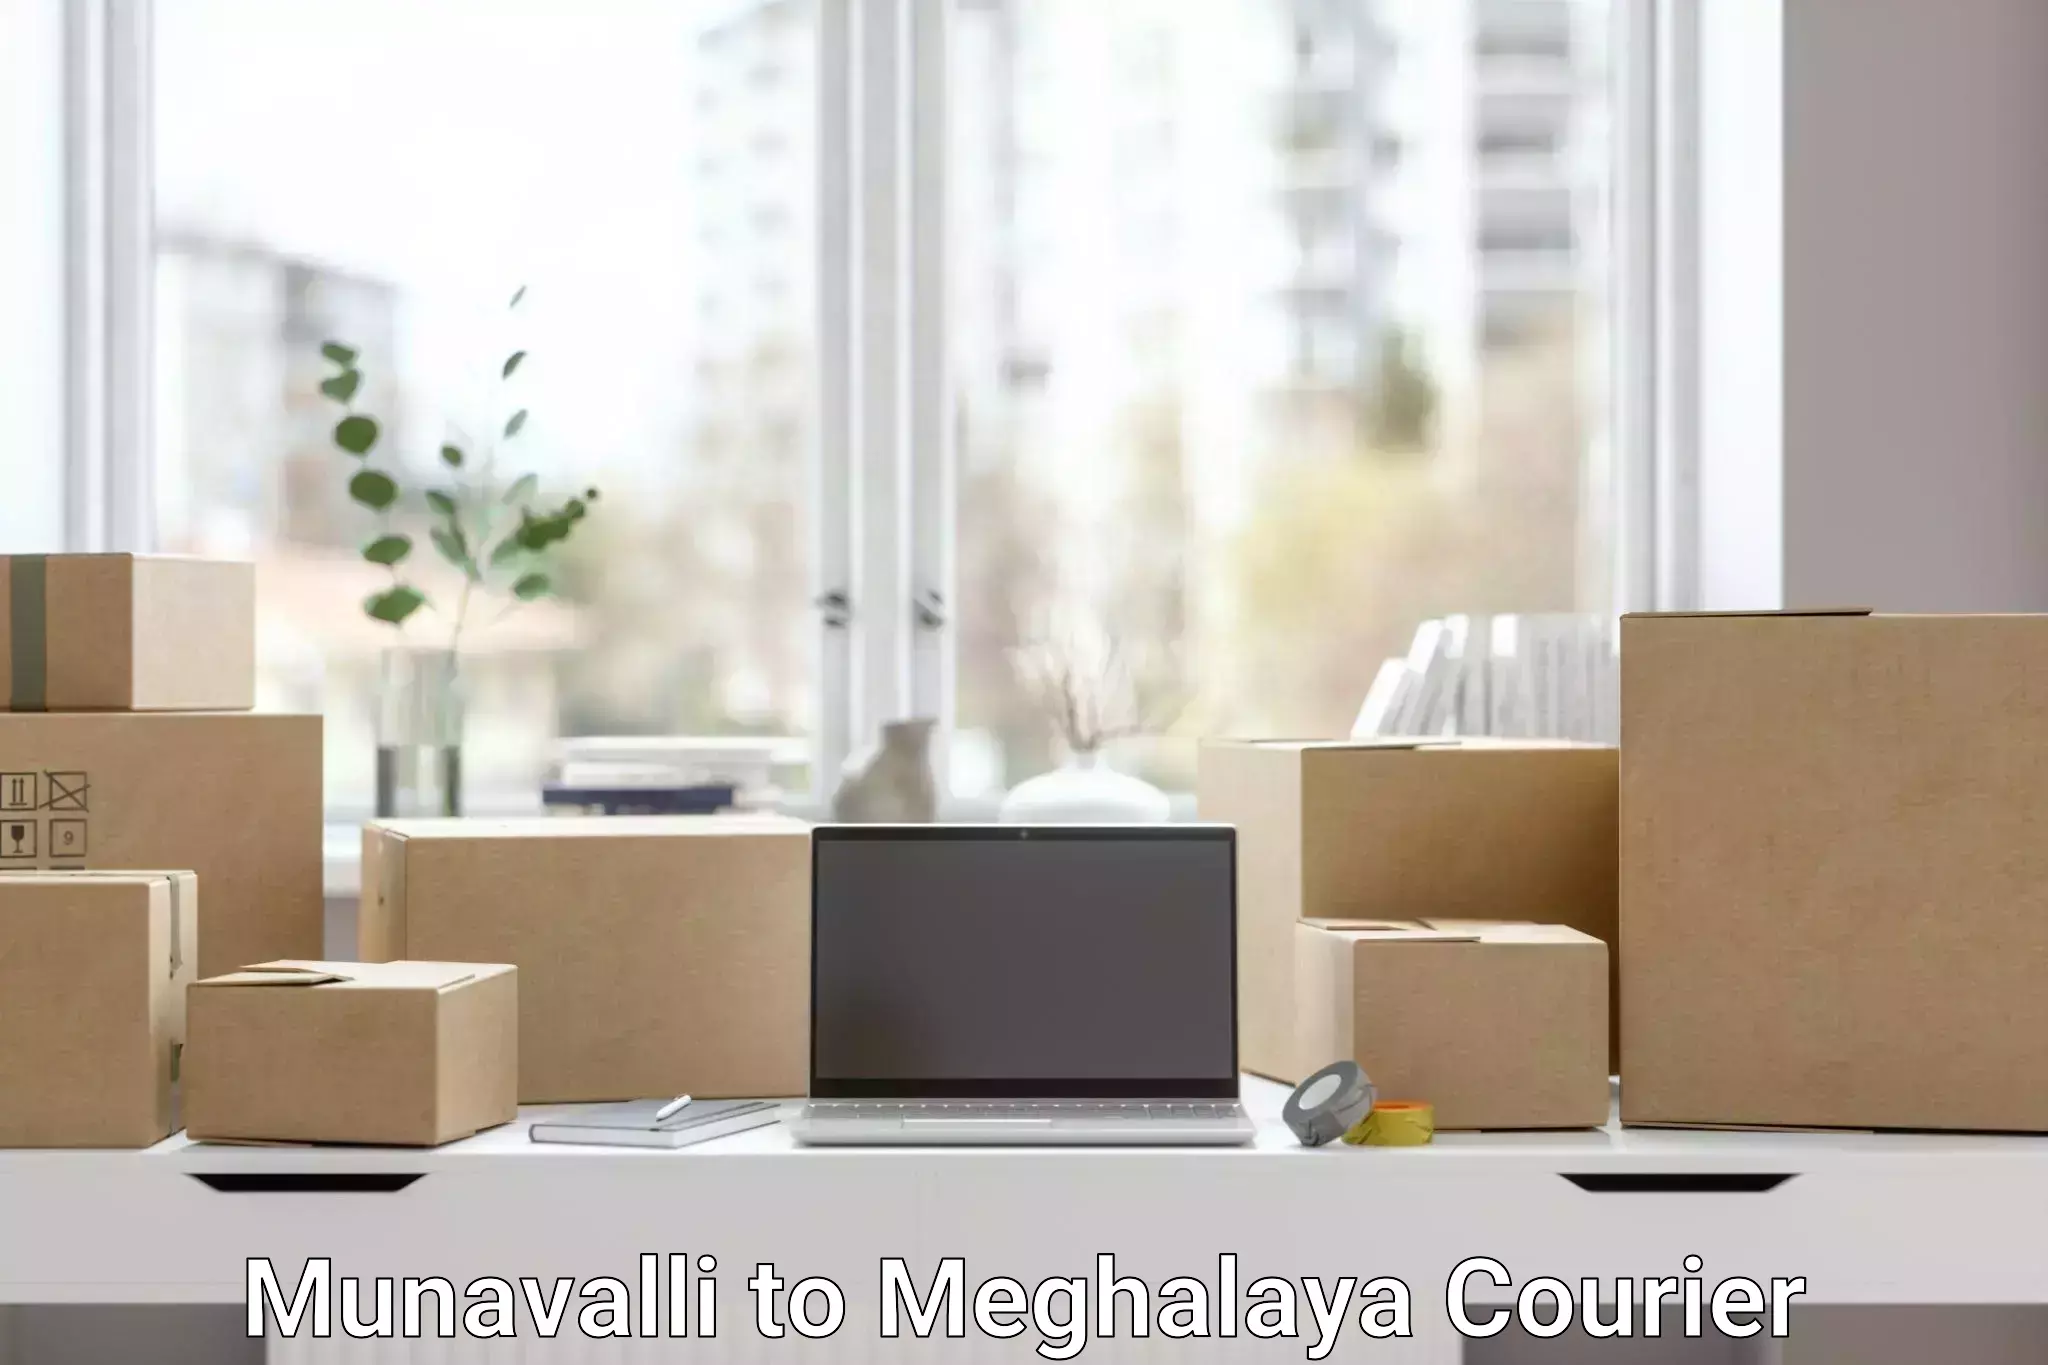 Affordable parcel service Munavalli to Meghalaya